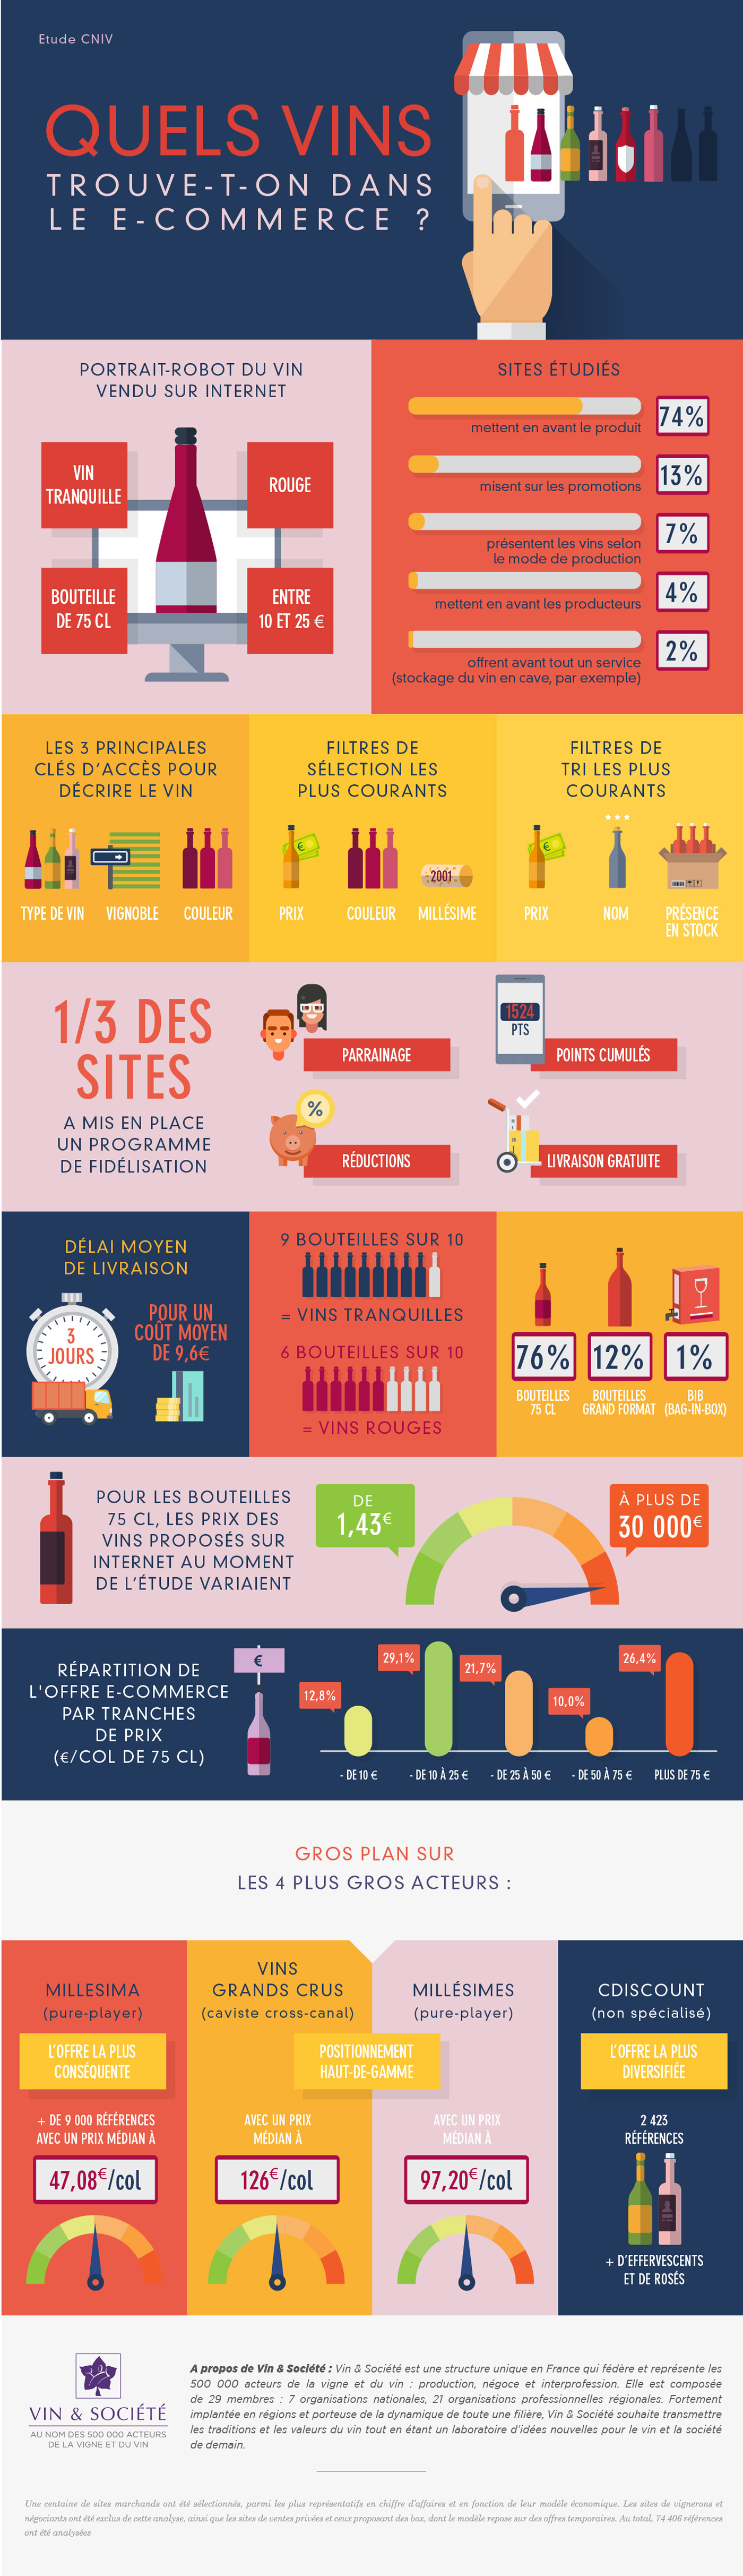 Quels vins trouve-t-on dans le e-commerce ? - Infographie